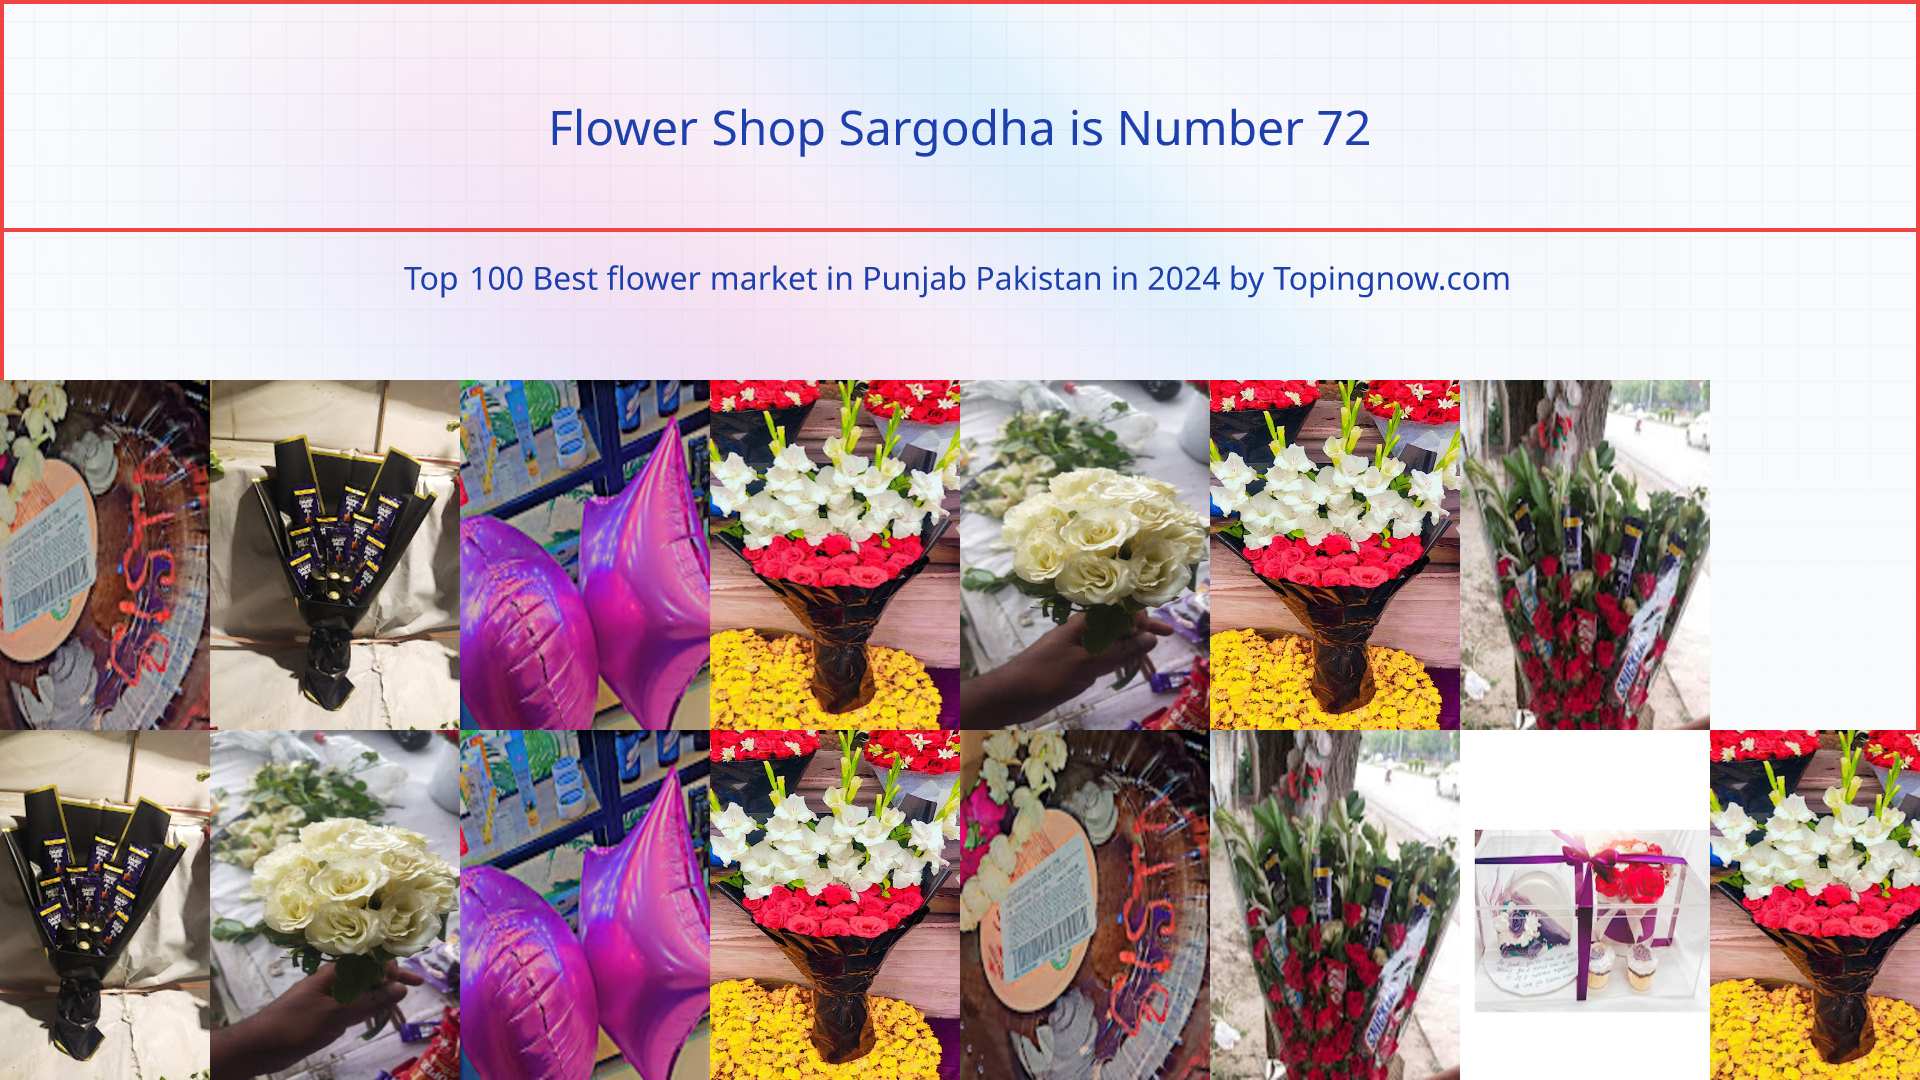 Flower Shop Sargodha: Top 100 Best flower market in Punjab Pakistan in 2024